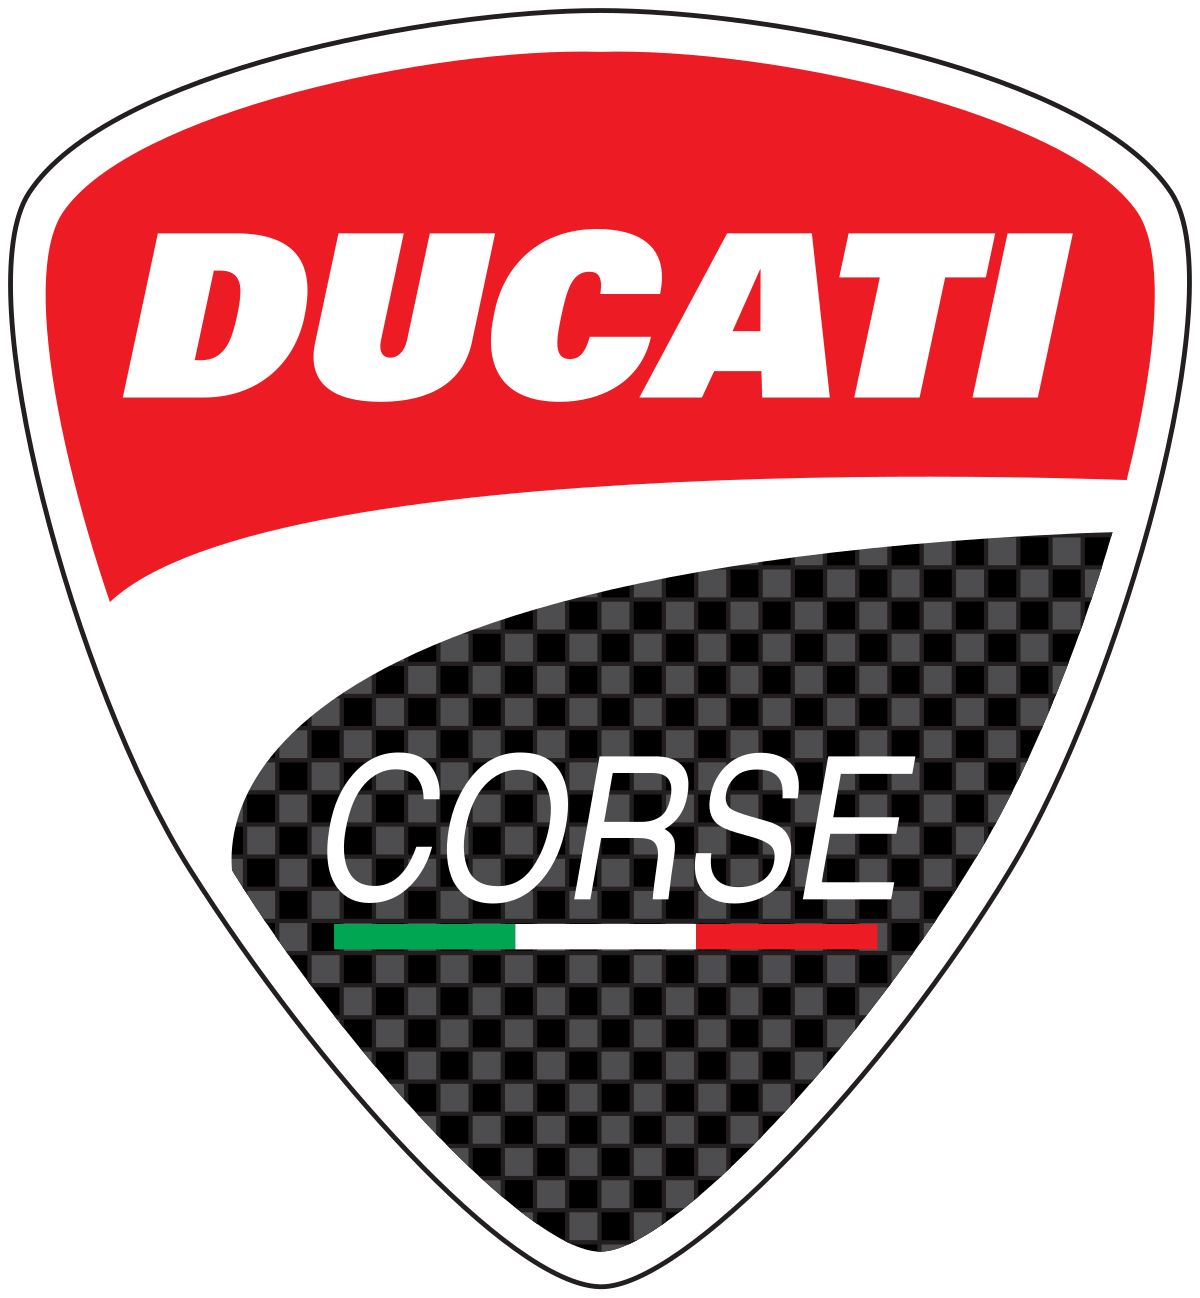 Ducati Corse - Wikipedia